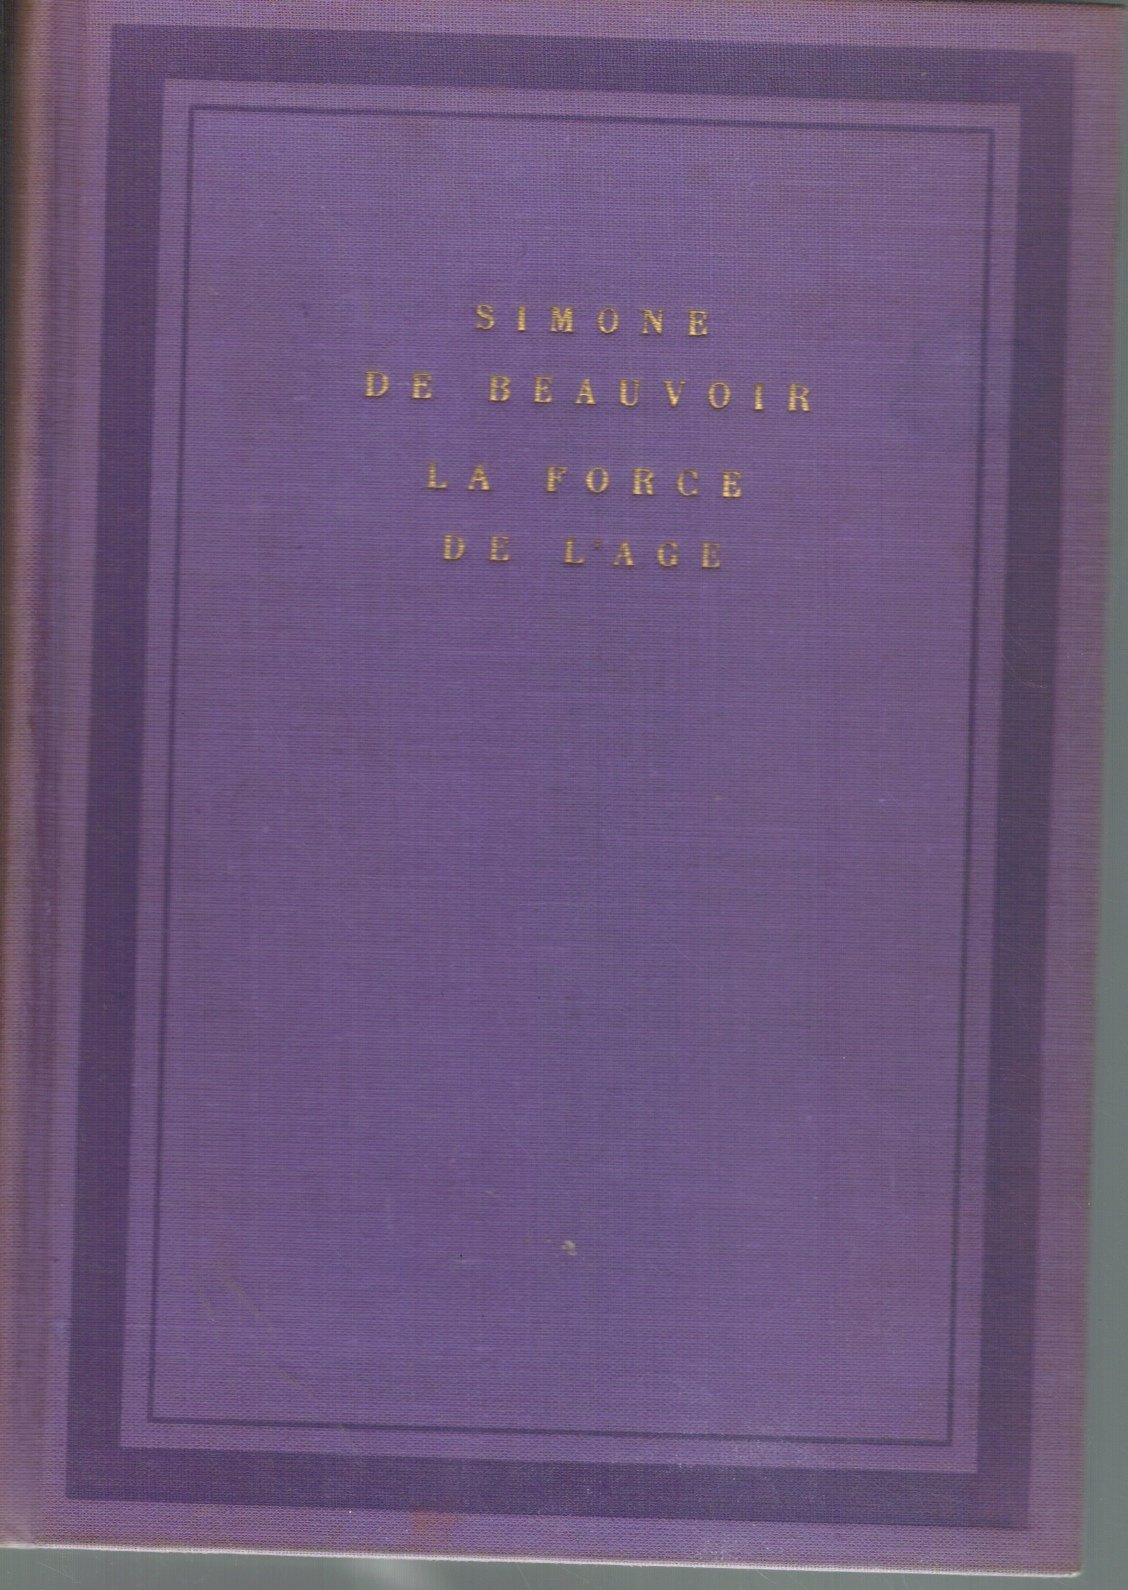 LA FORGE DE L'AGE  by De Beauvoir, Simone